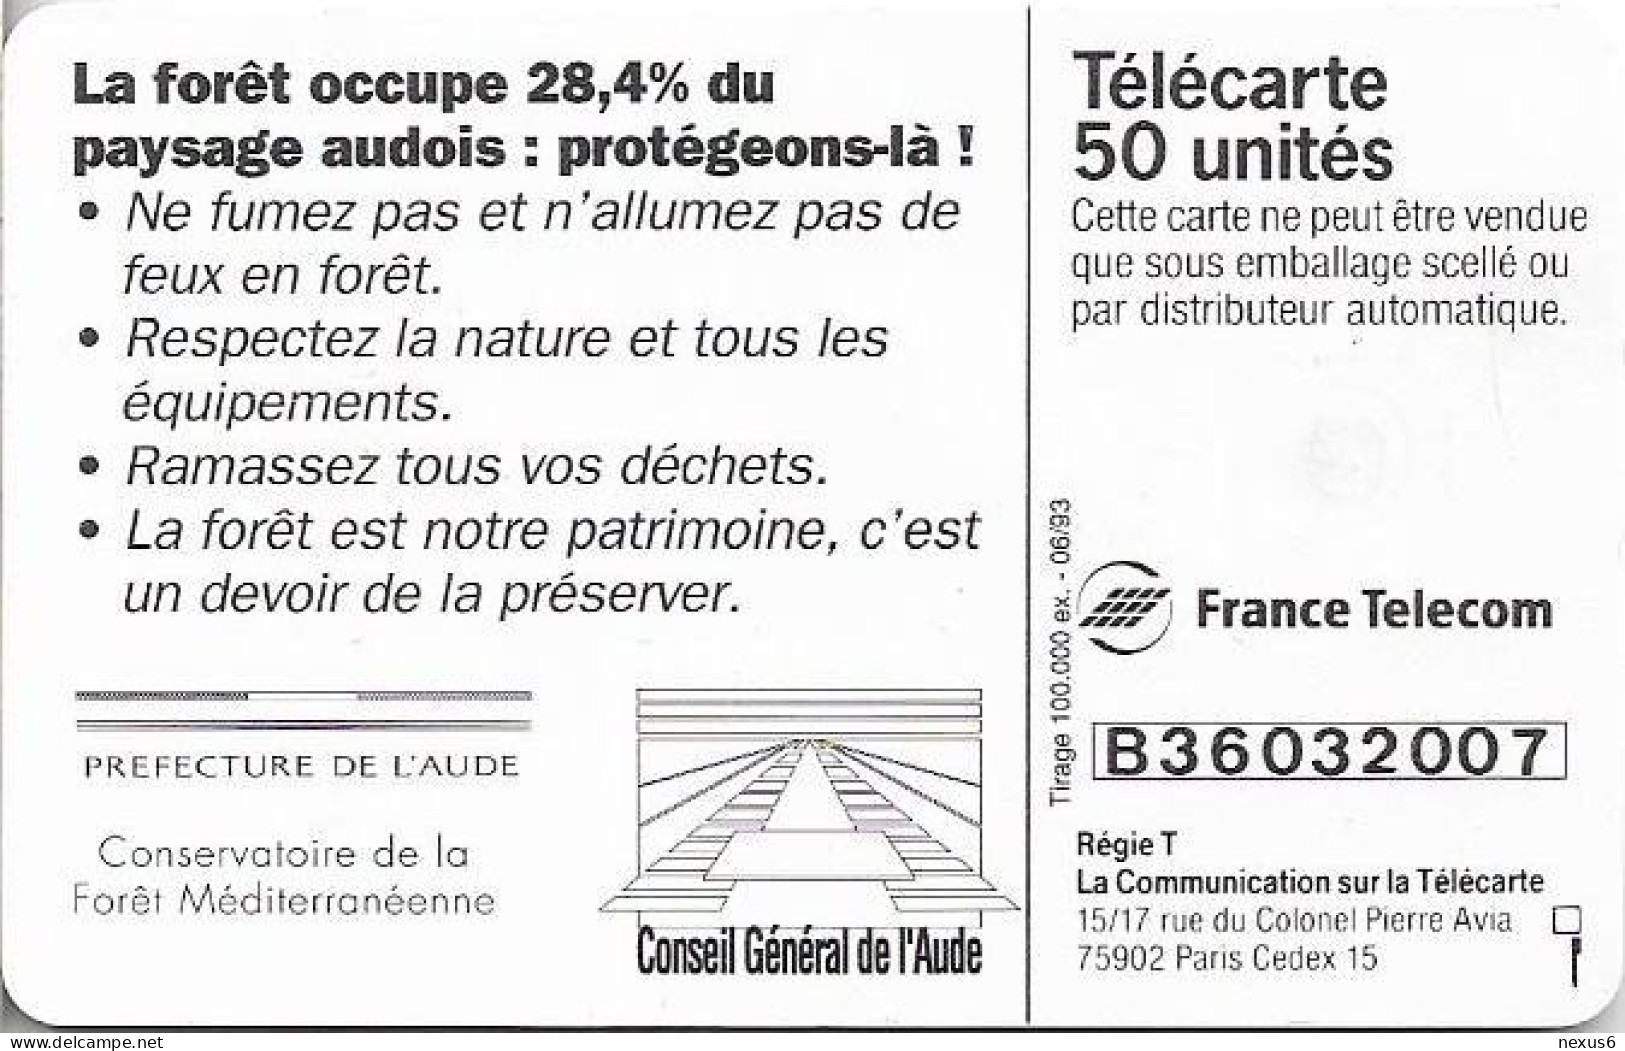 France - 0384 - Aude Incendie De Foret, Gem1A Symm. Black, With 2nd (Transp.) Moreno, 06.1993, 50Units, 100.000ex, Used - 1993